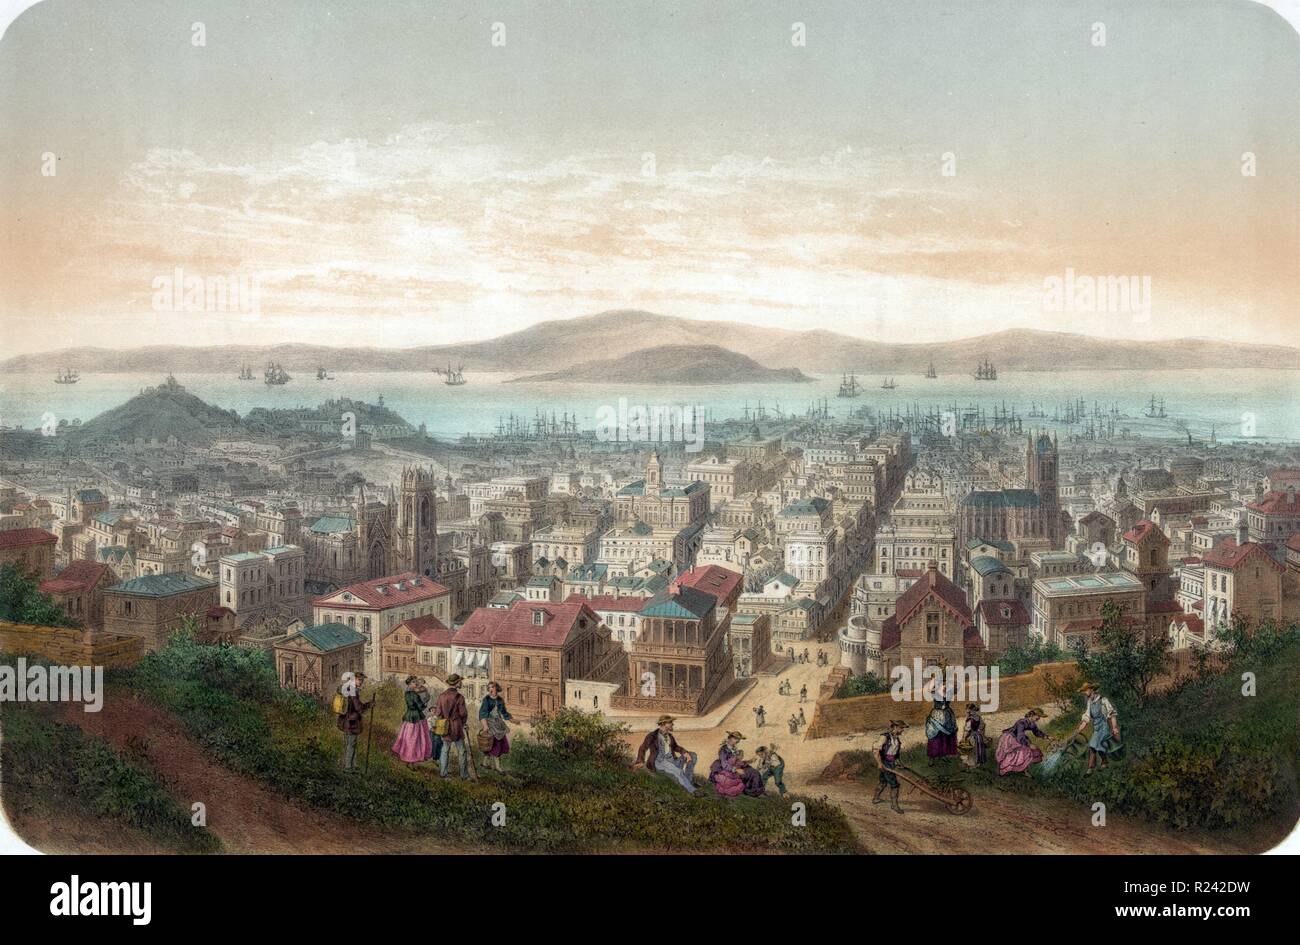 Bild mit dem Titel "Vue de San Francisco Vista de San-Francisco" mit Blick auf San Francisco, mit Menschen auf einem Hügel im Vordergrund. Erstellt von Laurent Isador Deroy (1797-1886). Vom 1860 Stockfoto